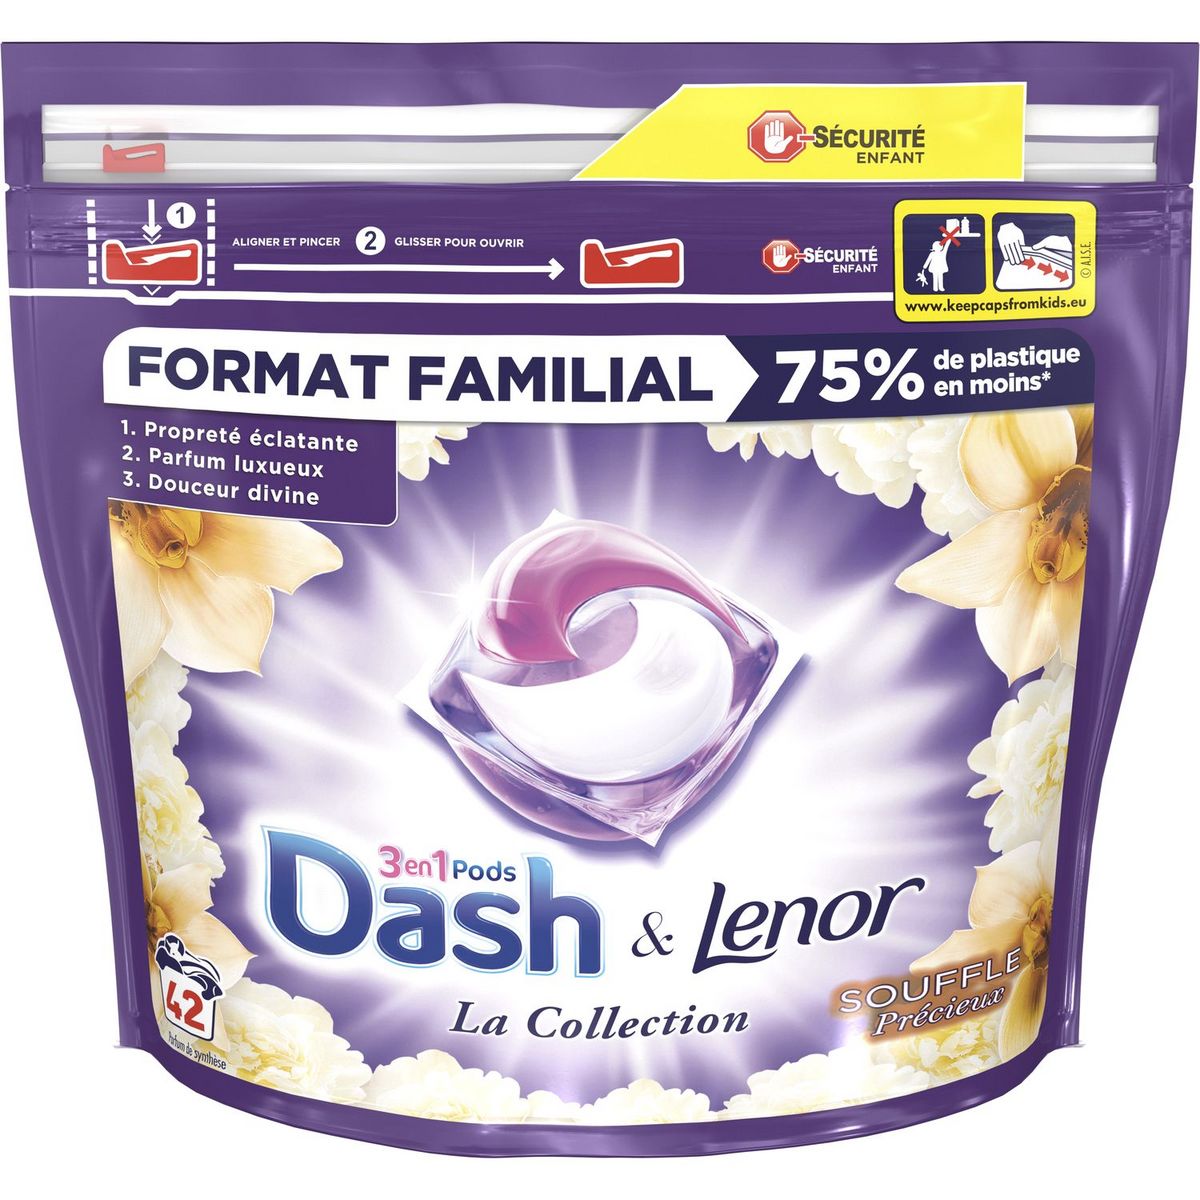 DASH Dash&Lenor Pods lessive souffle précieux x42 1,168kg 42 pods 1,168kg  pas cher 